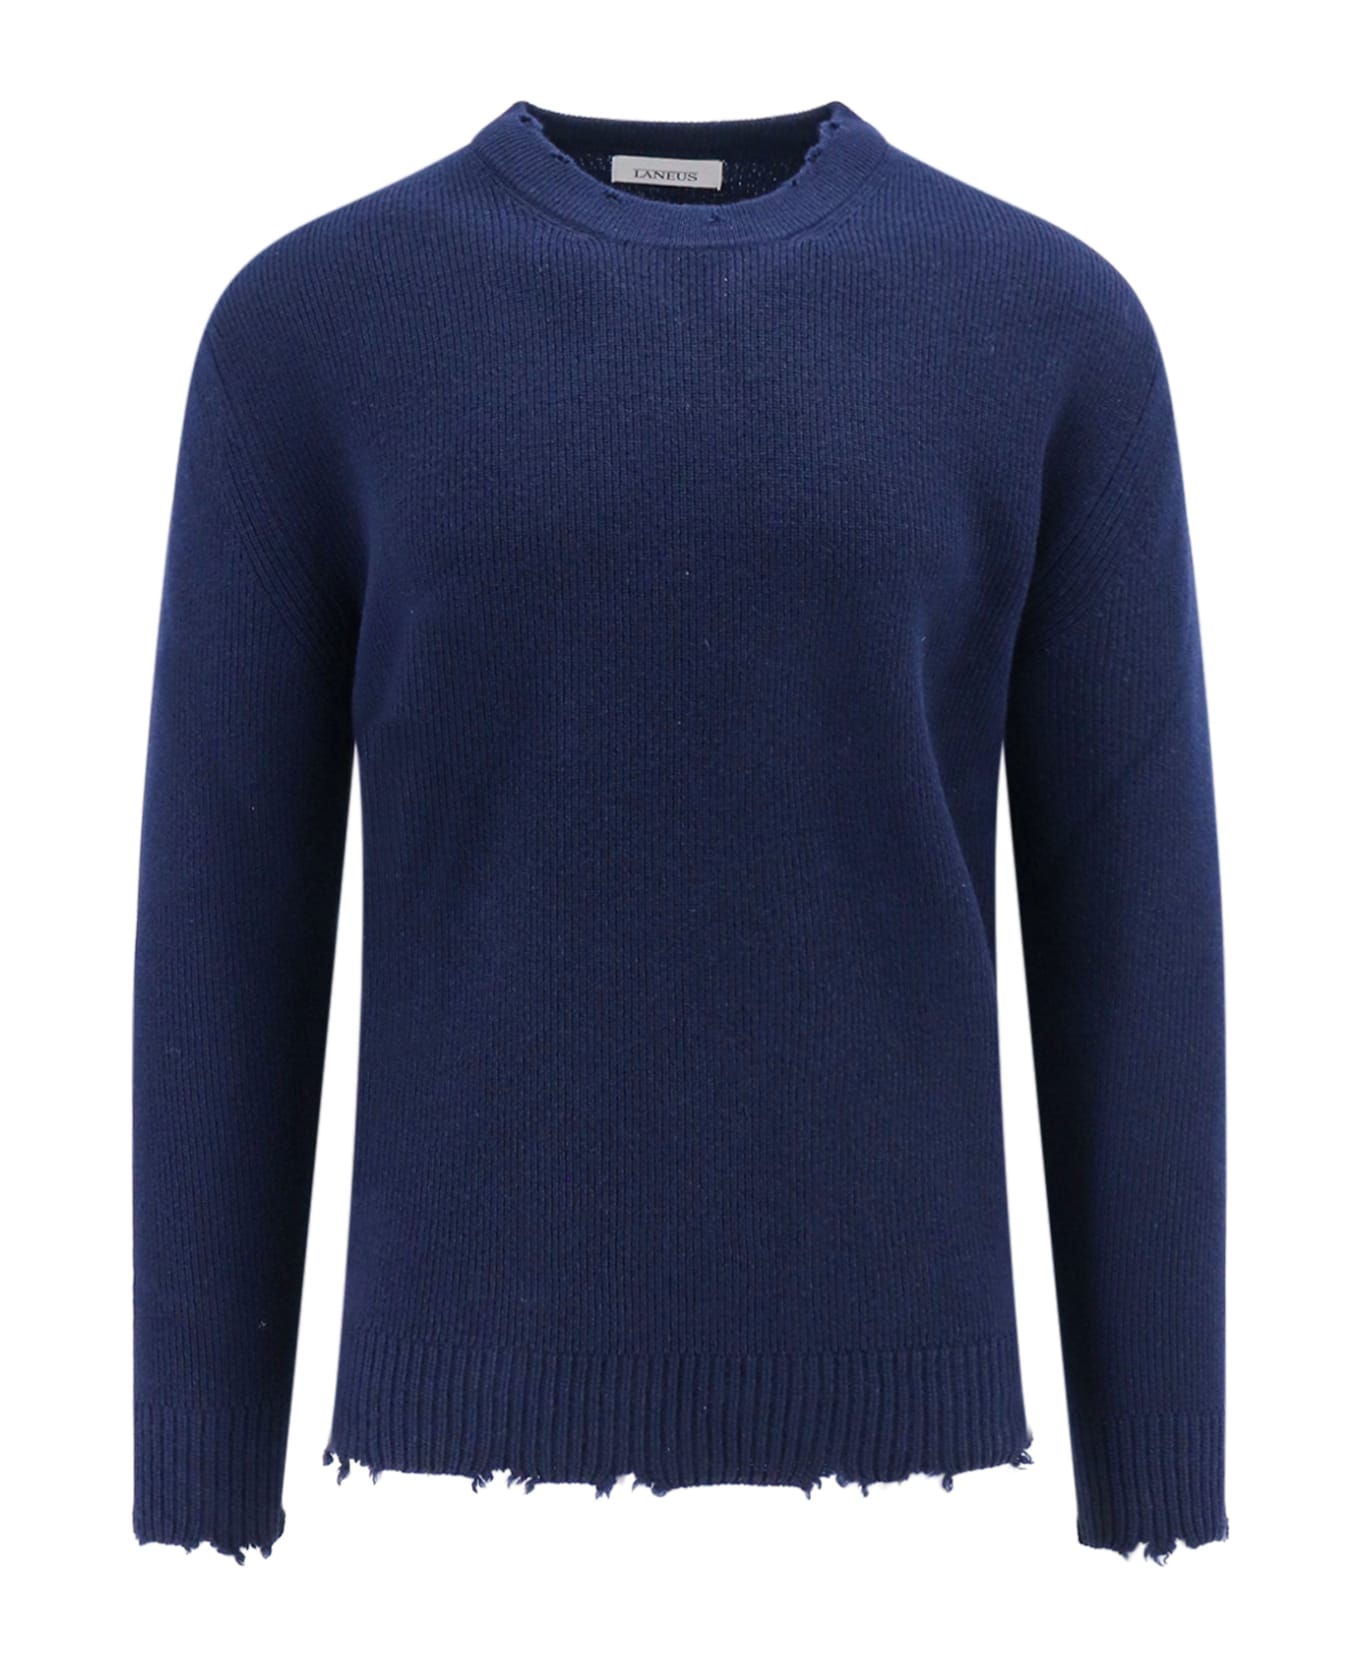 Laneus Sweater - Blue ニットウェア